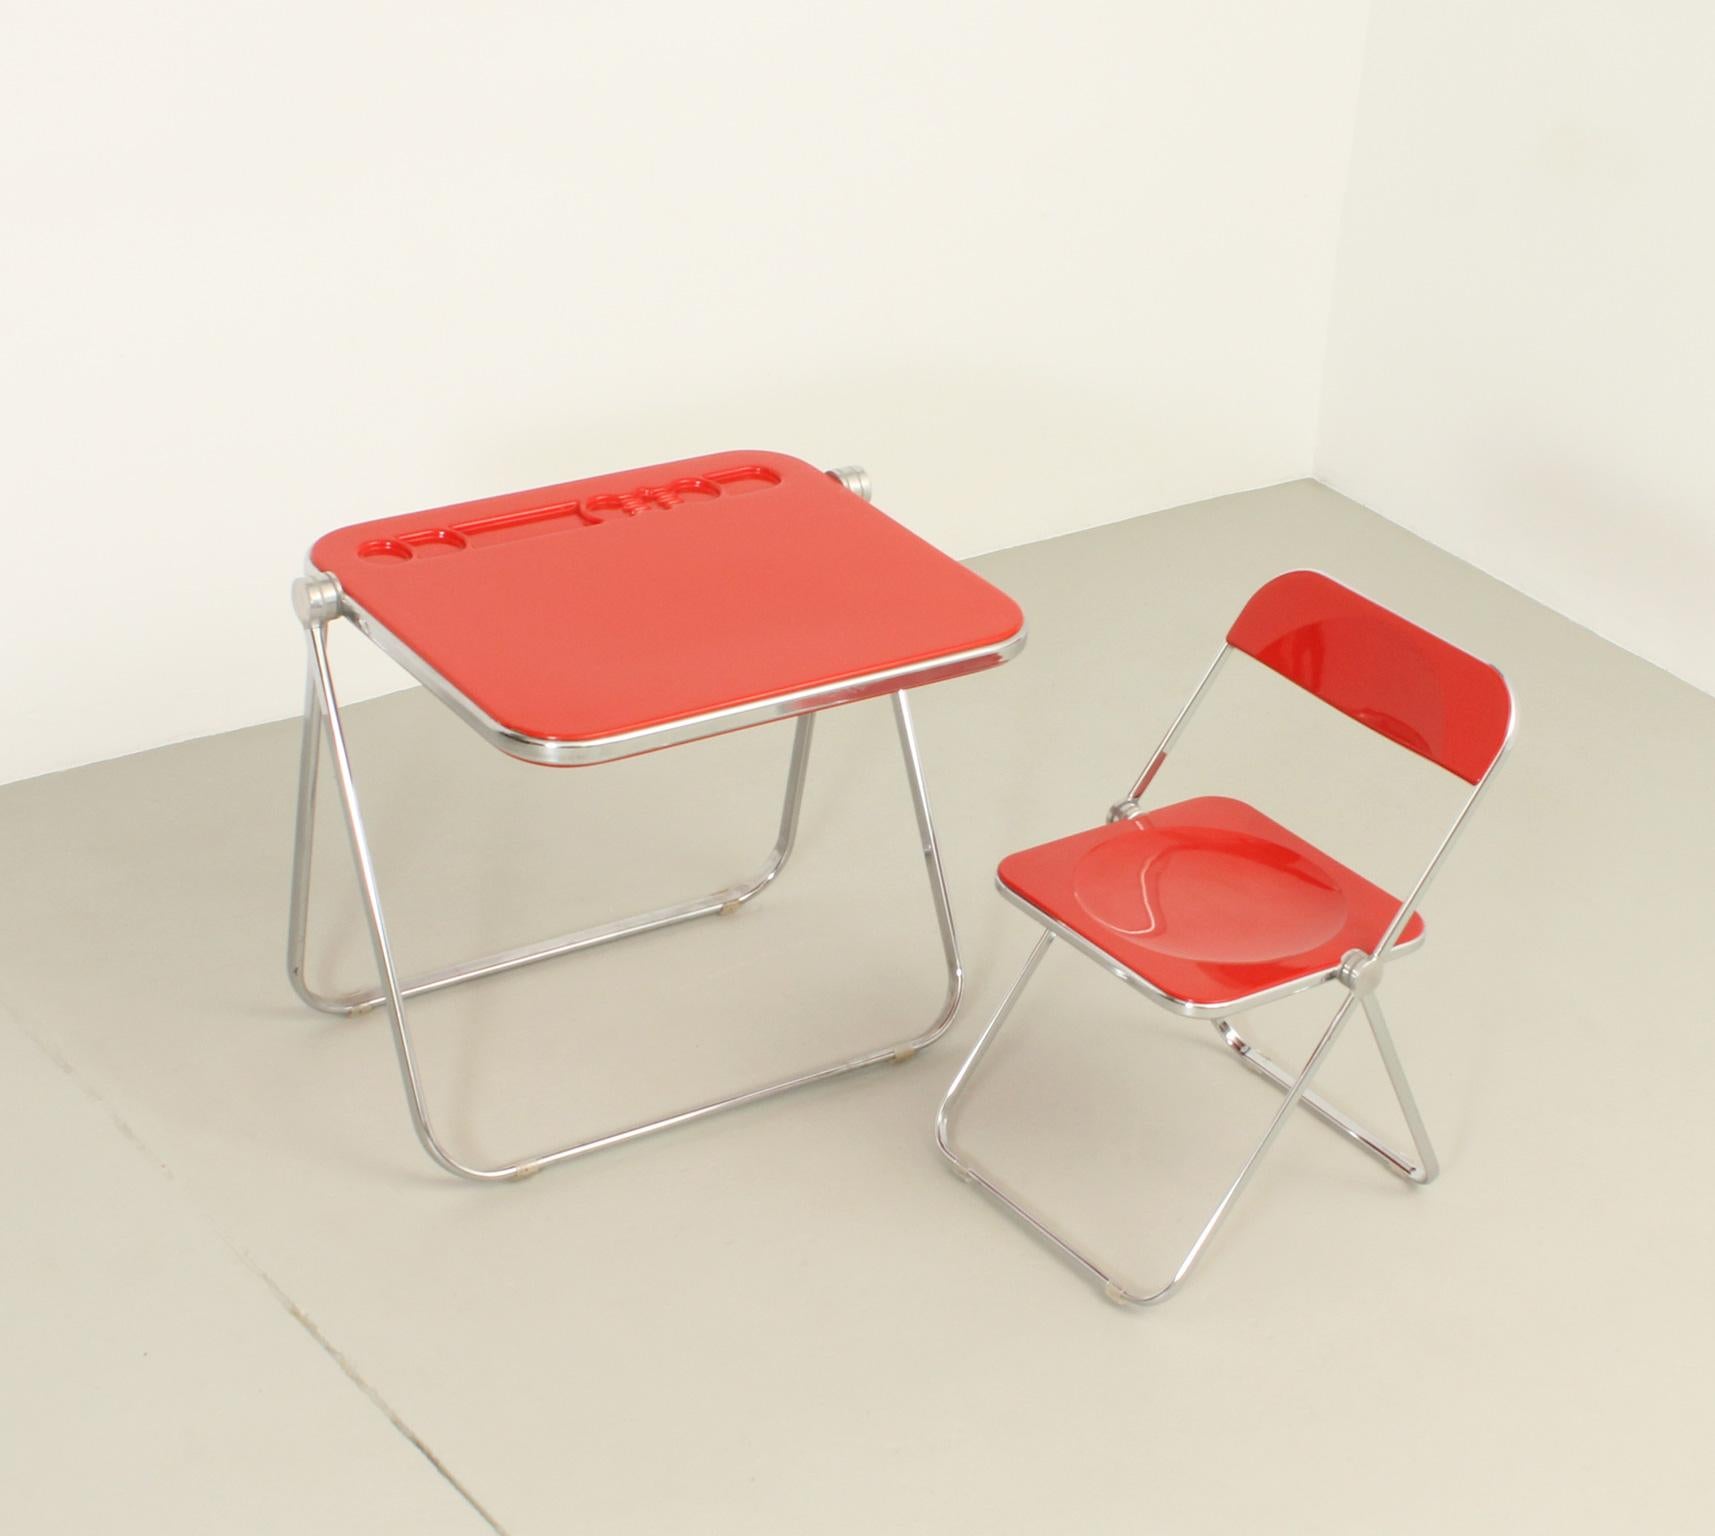 Bureau pliant Platone et chaise Plia conçus en 1971 et 1969 par Giancarlo Piretti pour Anonima Castelli, Italie. Structure articulée en acier chromé avec plastique moulé ABS rouge. Édition ancienne avec label en papier. 